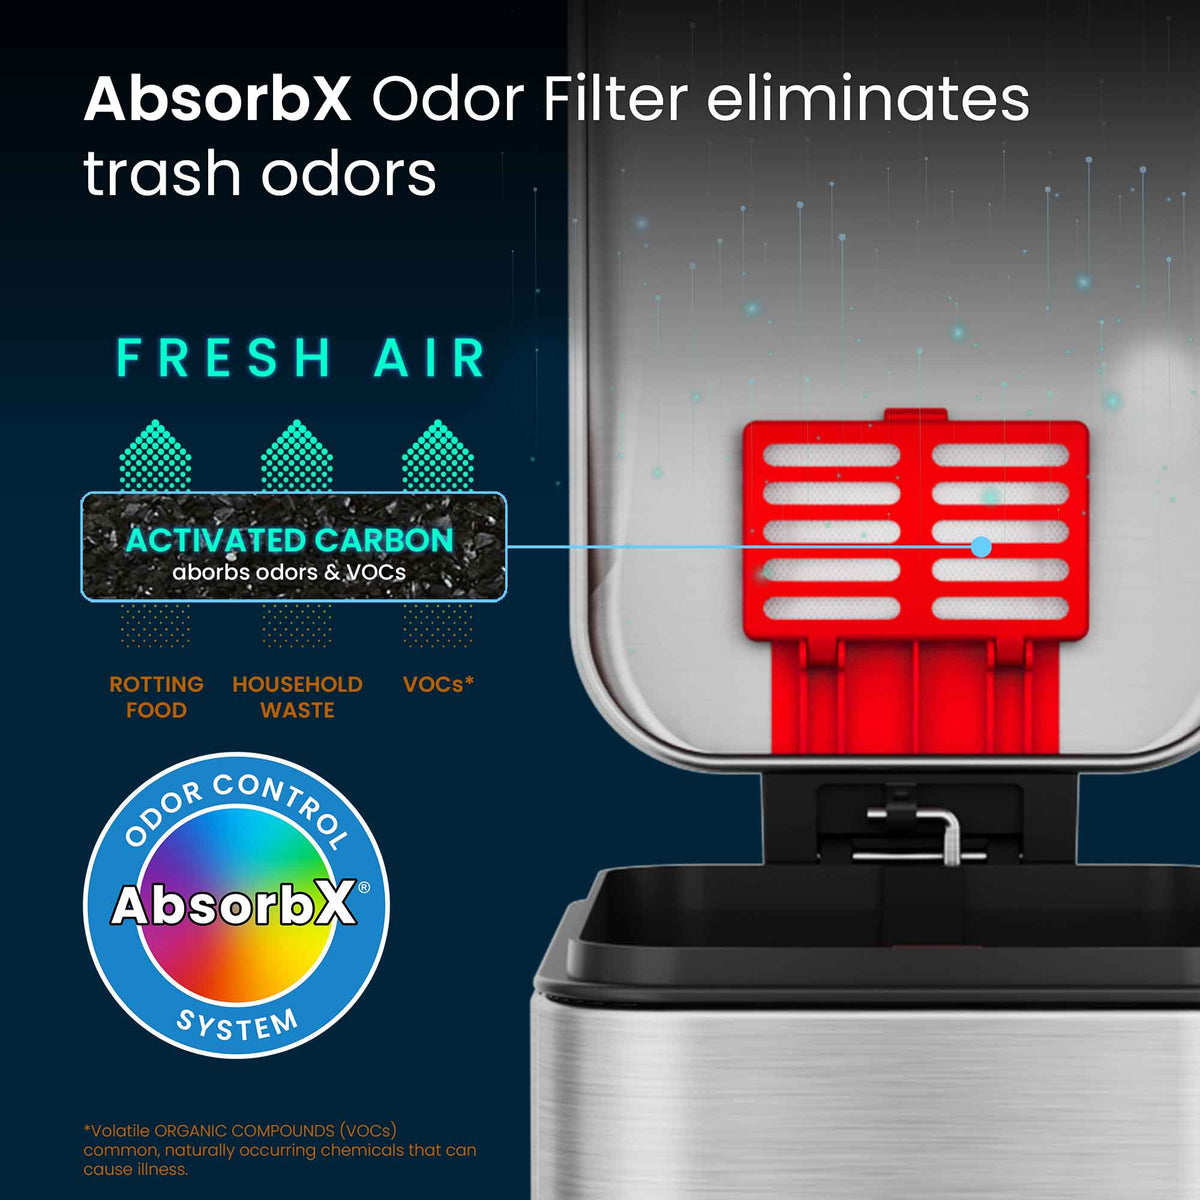 1.3 Gallon / 4.9 Liter SoftStep Slim Step Pedal Trash Can AbsorbX Odor Filter eliminates trash odors